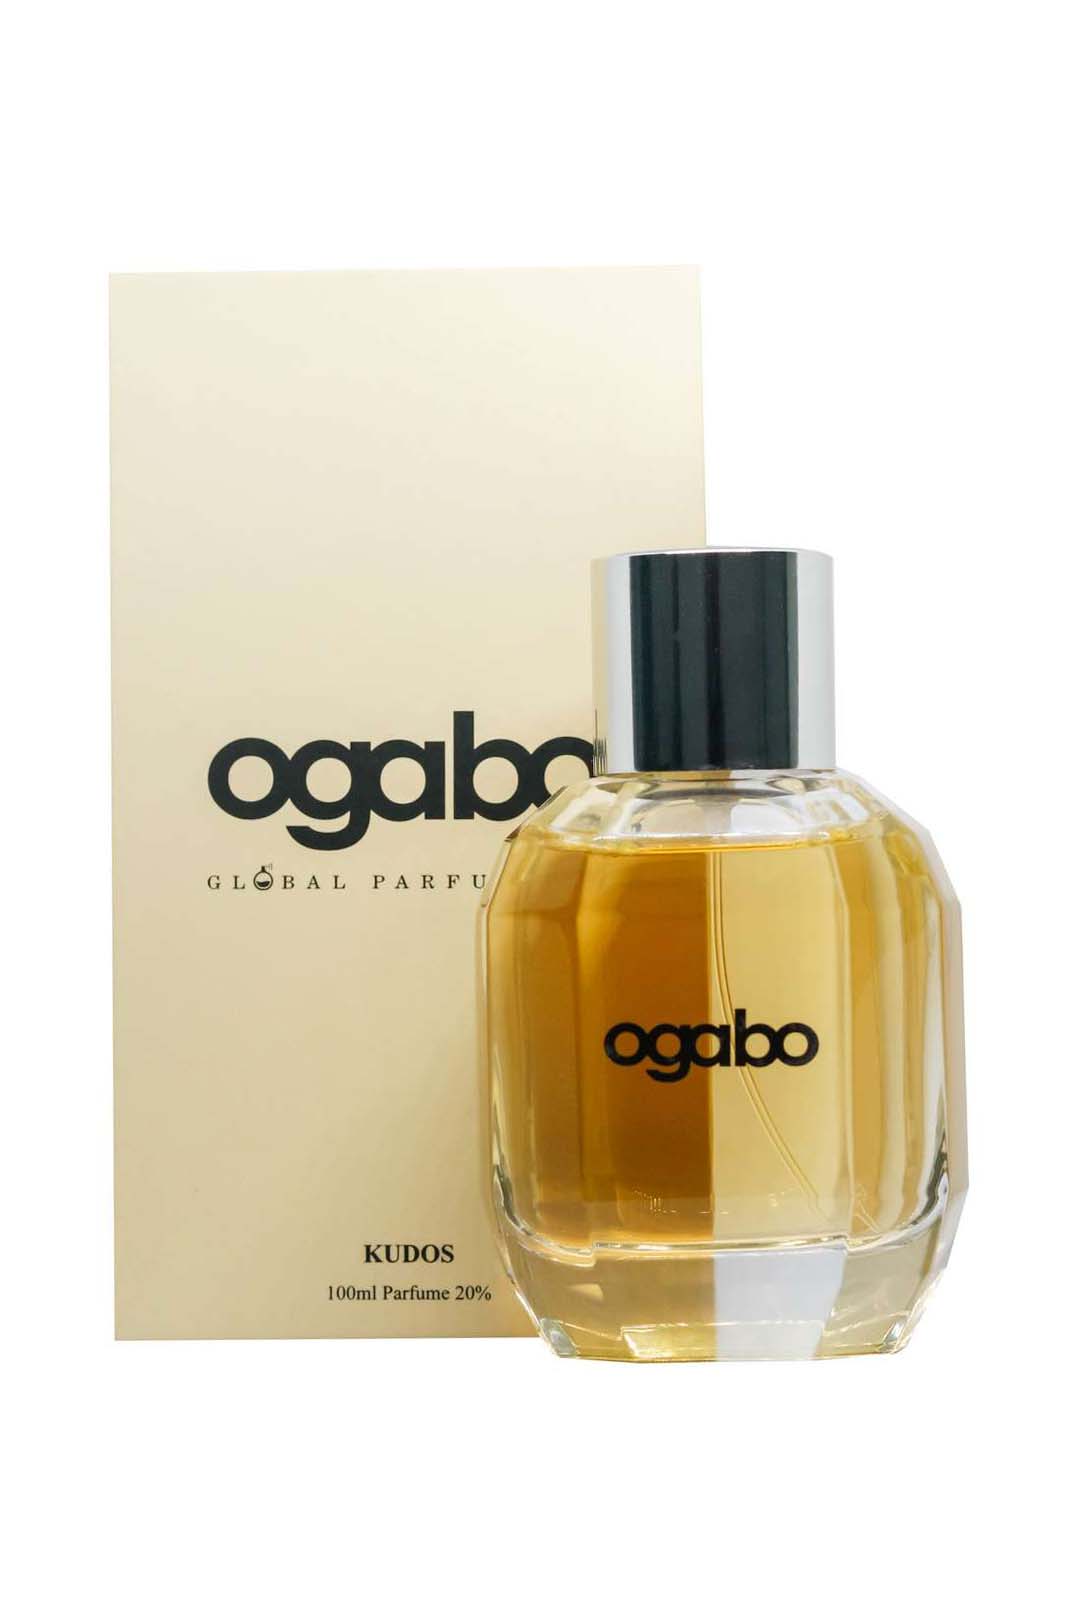 Ogabo Kudos Unisex Perfume 100ml